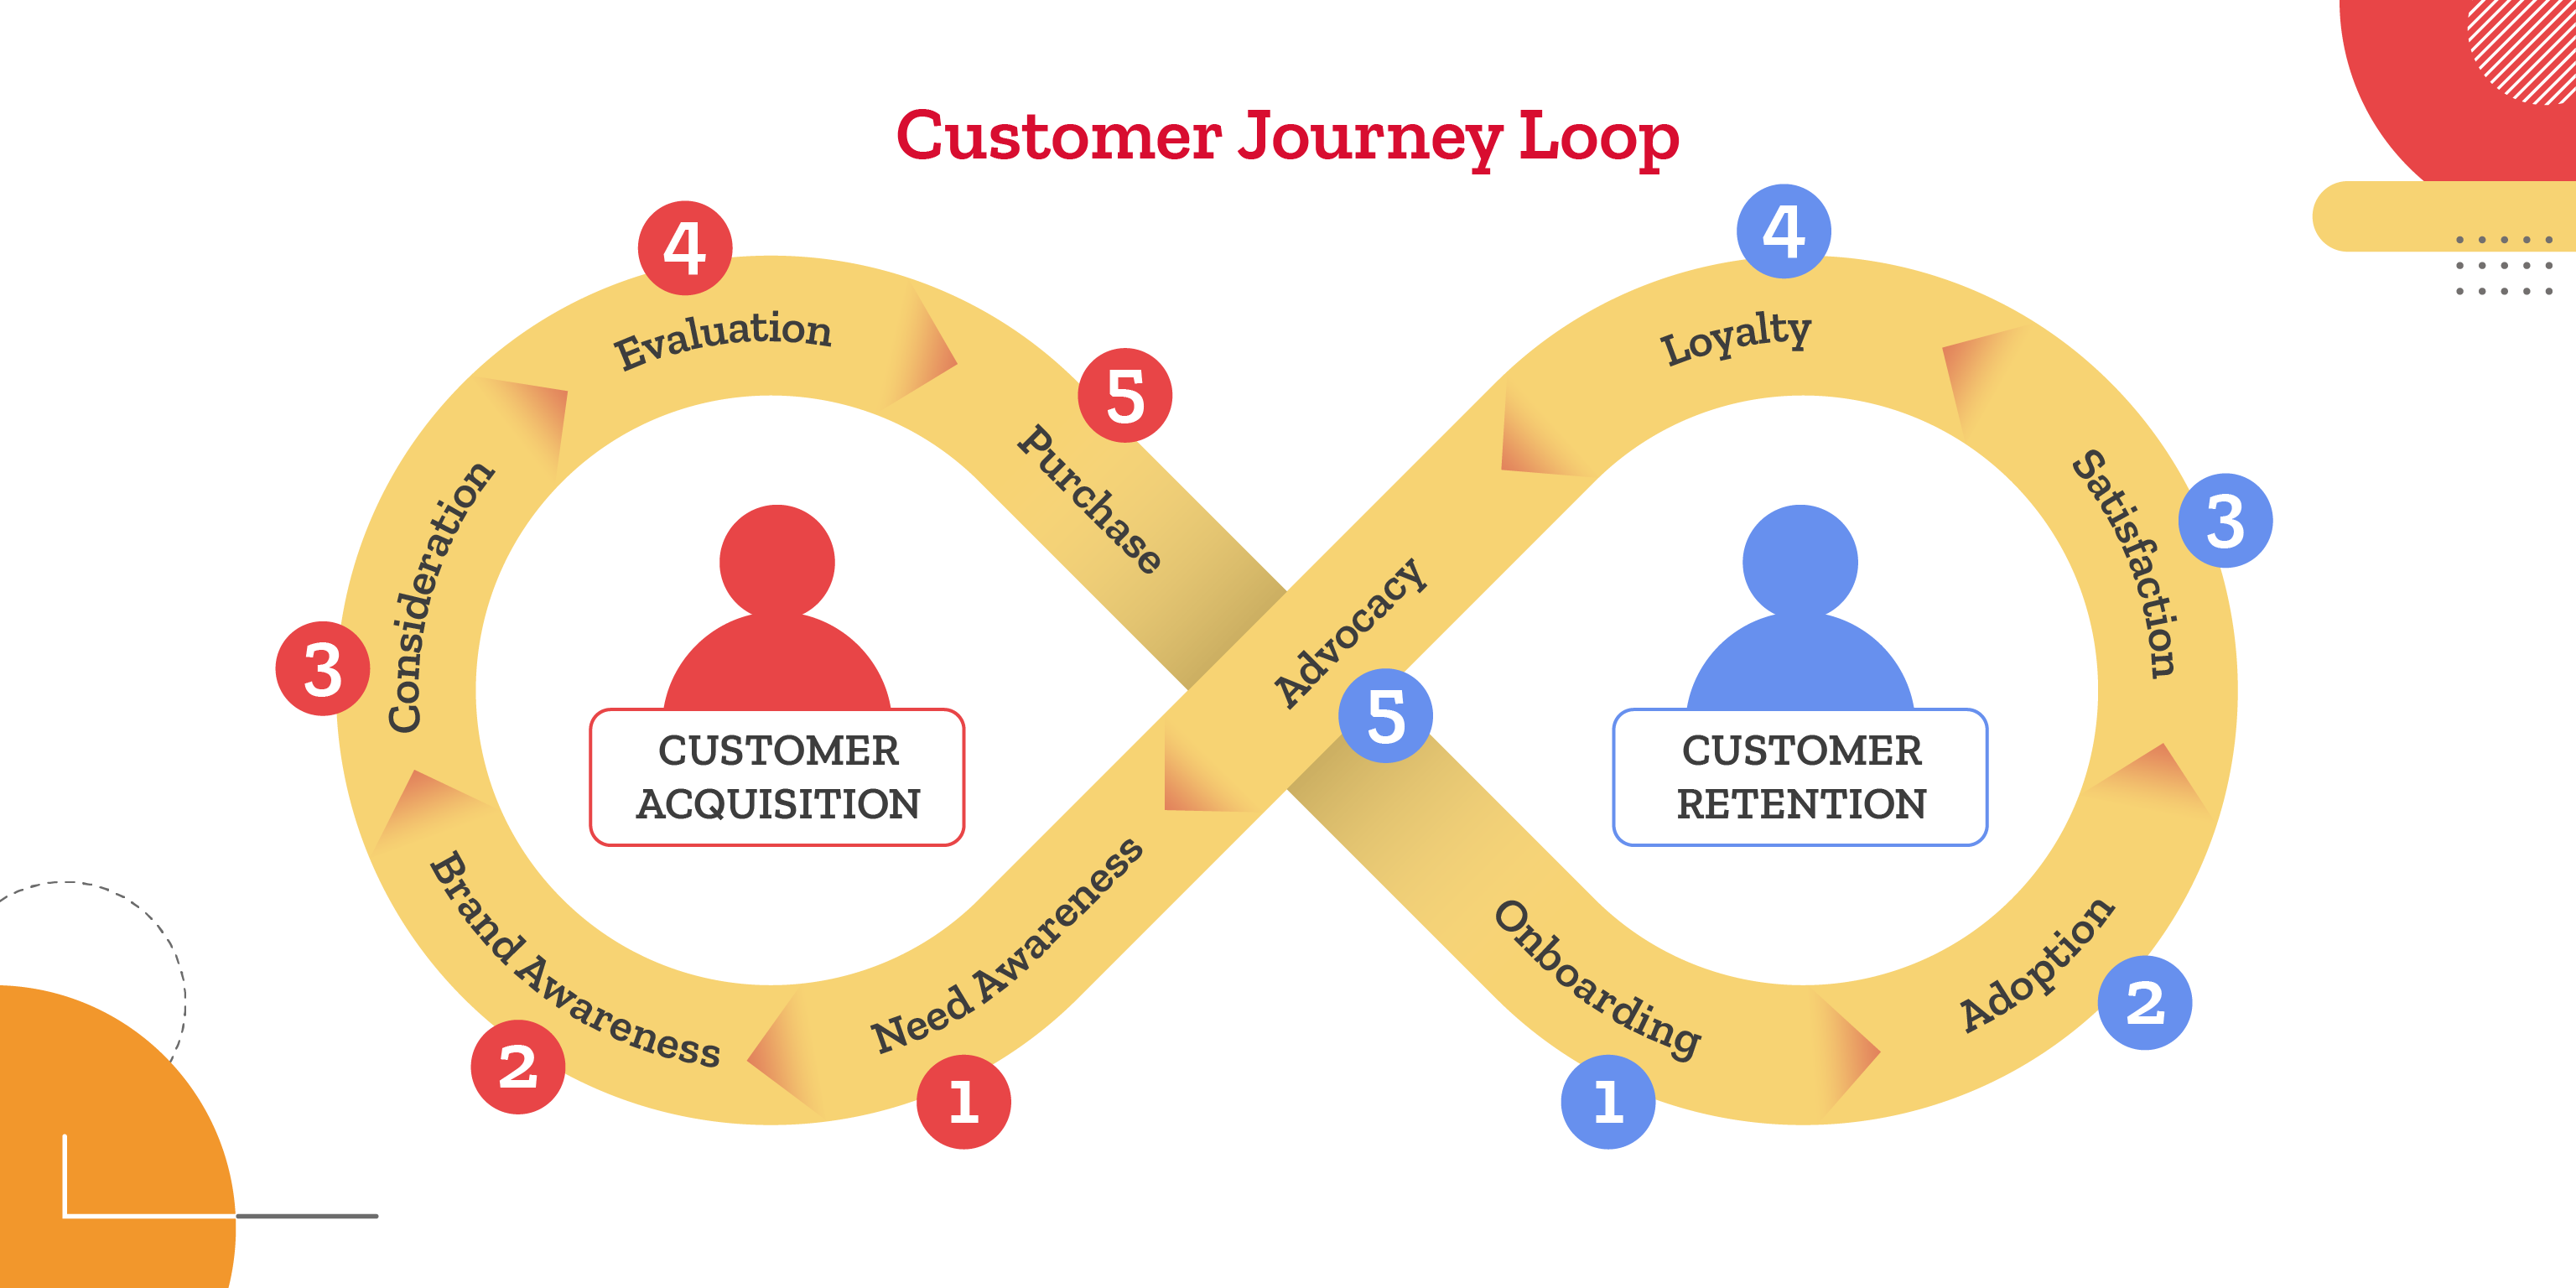 Customer Loyalty loop